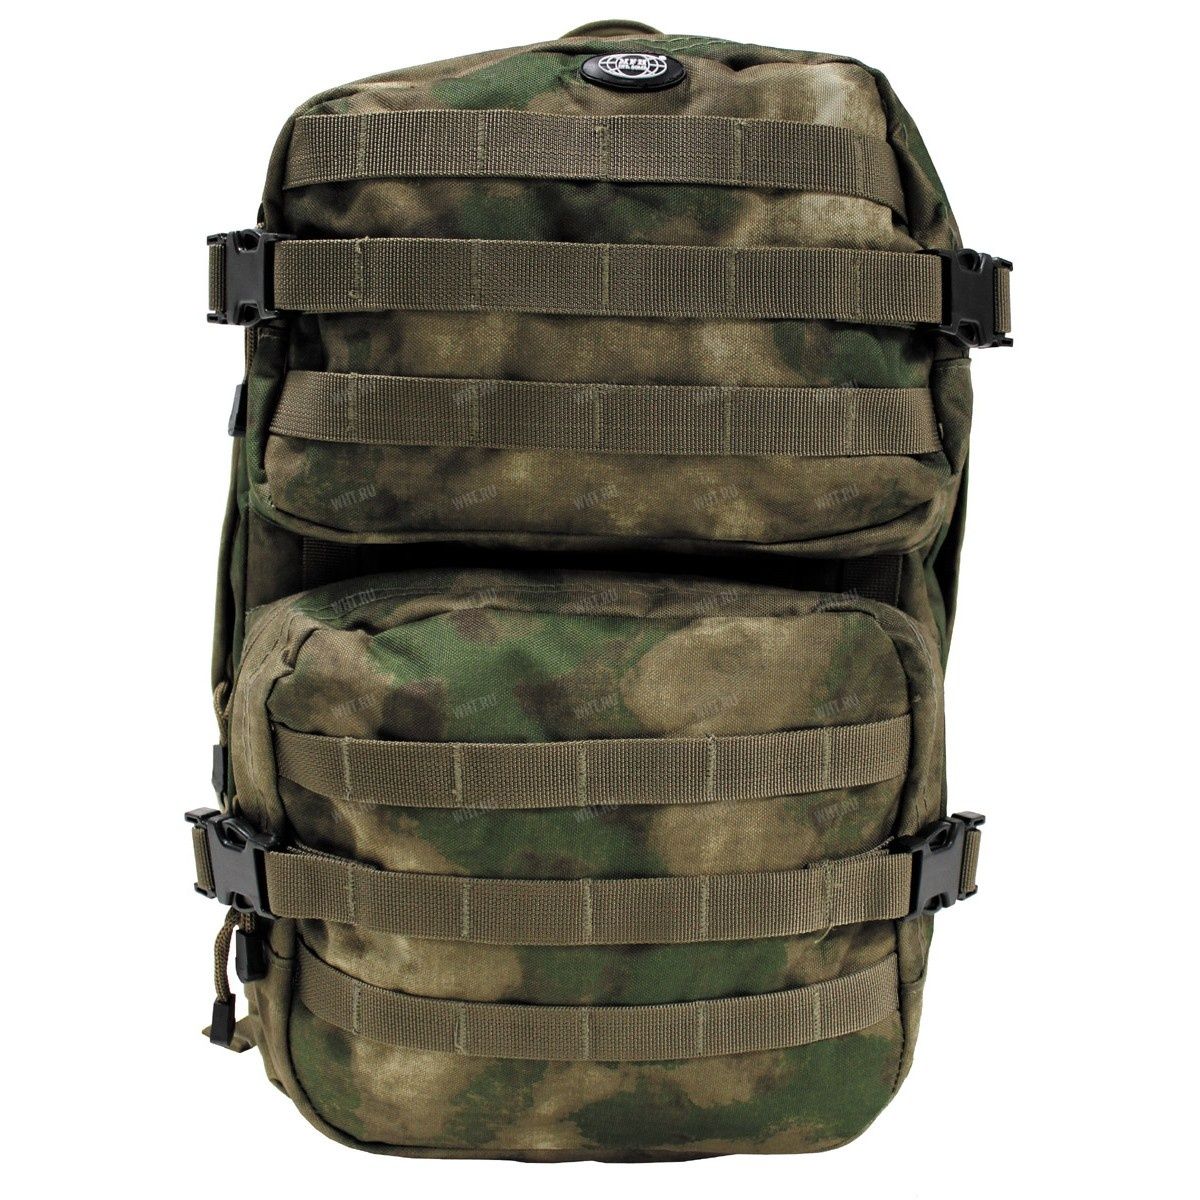 Тактический рюкзак US Assault II (40 литров), камуфляж HDT-camo FG купить в интернет-магазине wht.ru